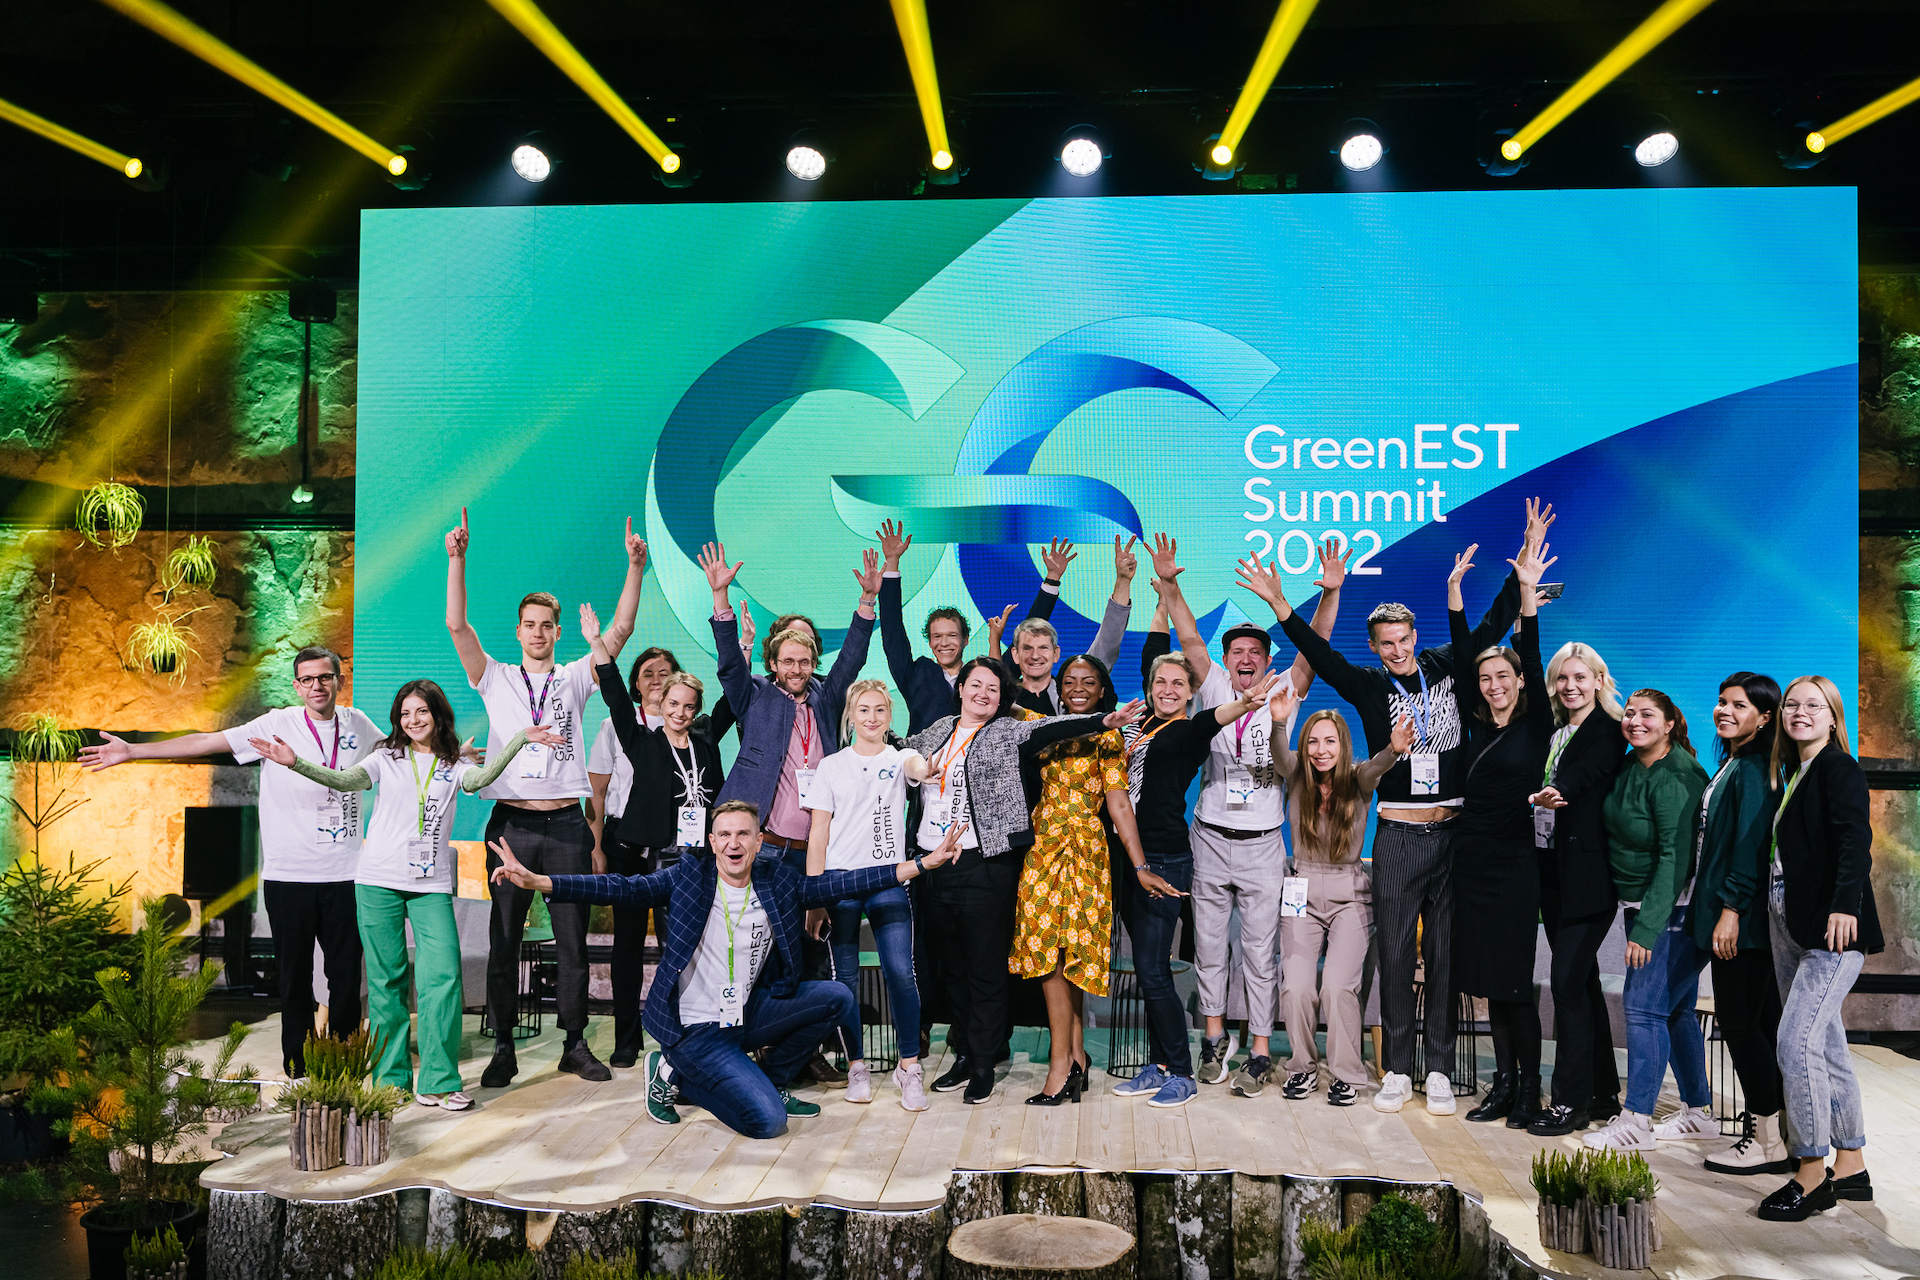 Inteligența artificială și tehnologia verde se întâlnesc la o conferință internațională la Tallinn